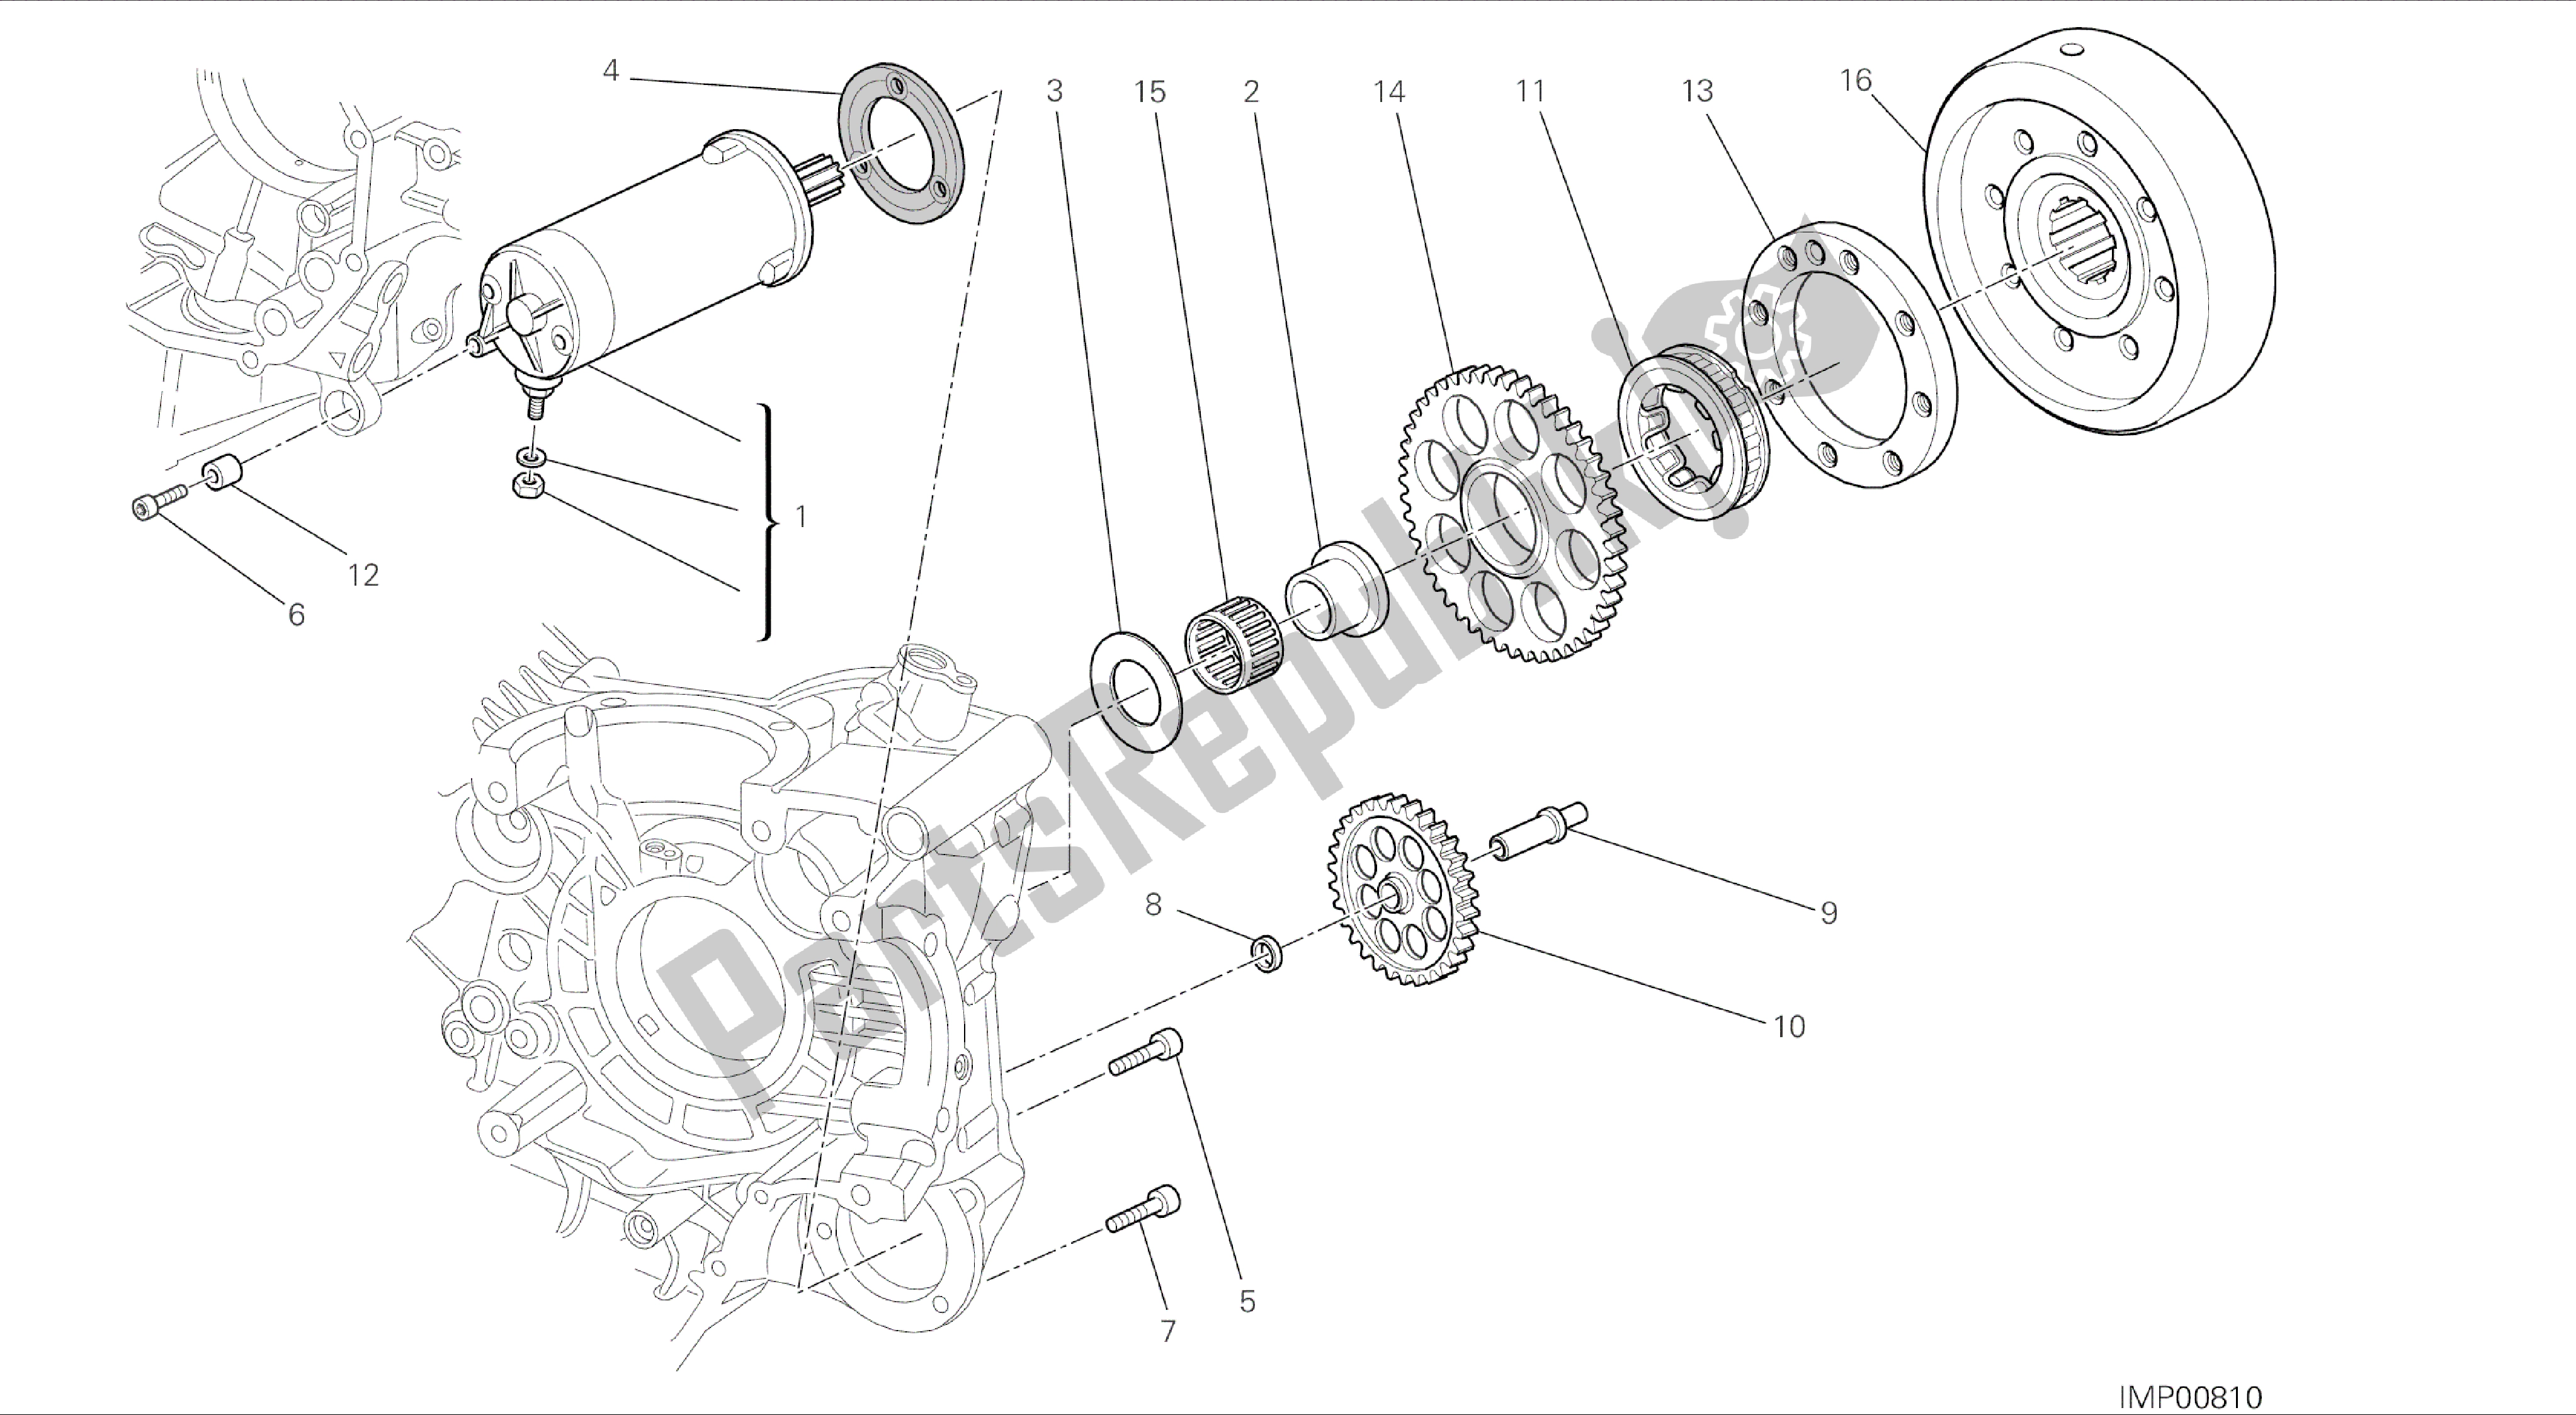 Toutes les pièces pour le Dessin 012 - Démarrage Moteur [mod: Ms1200-a; Xst: Aus, Eur, Fra, Tha] Groupe Moteur du Ducati Multistrada 1200 2014